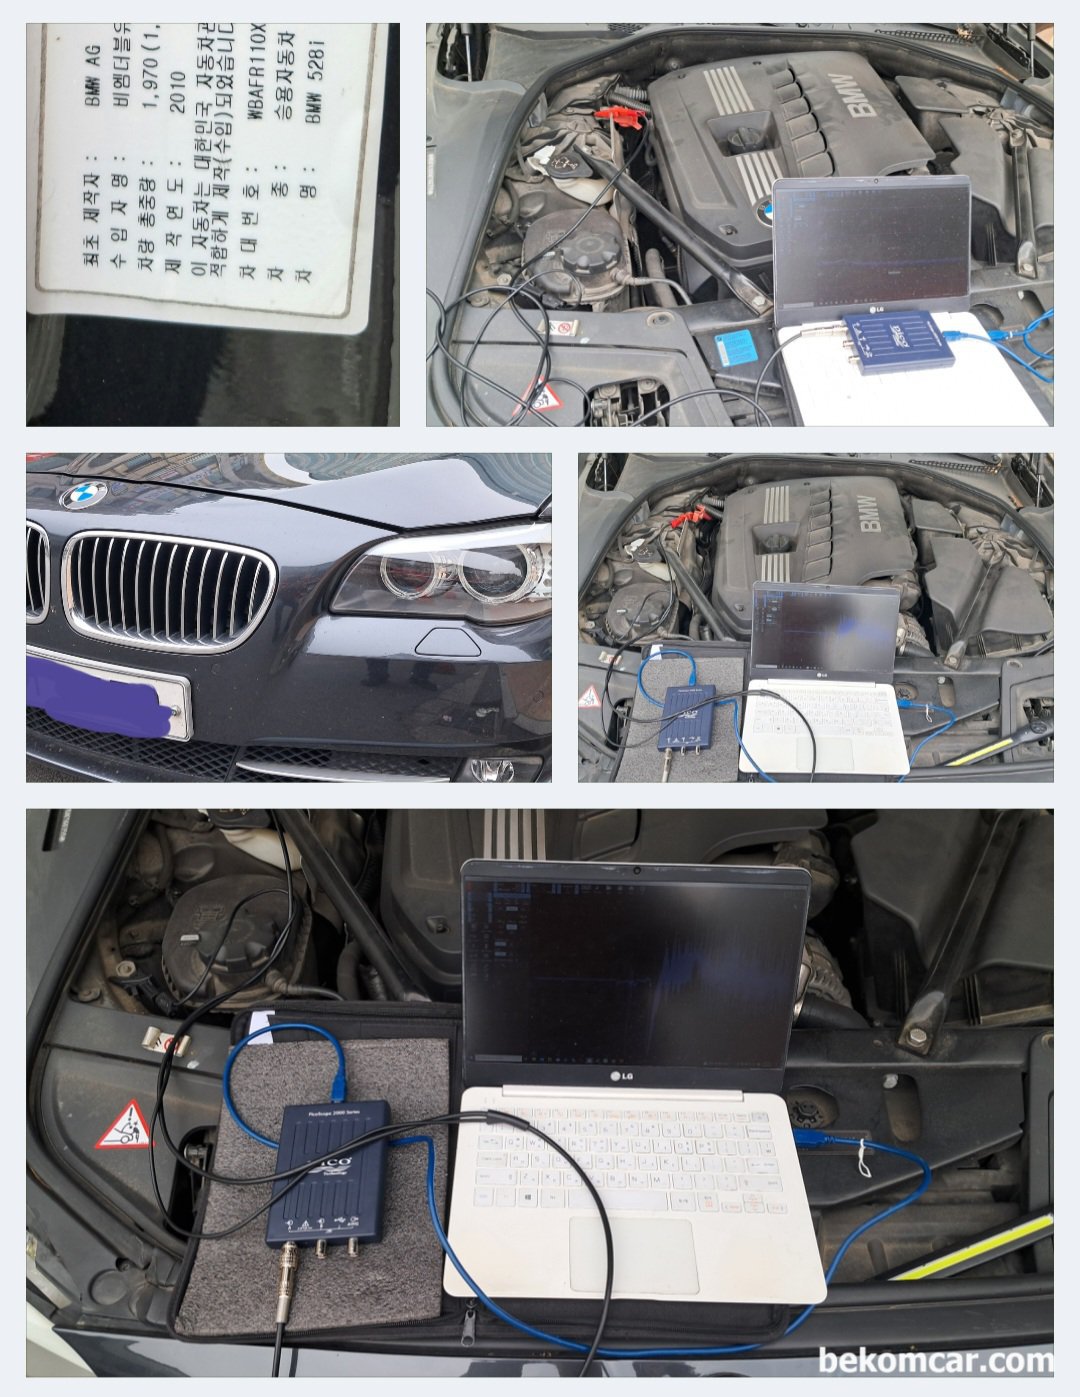 2010년 BMW 528i, 알터네이터 교체전 피코스코프 사용 리플전압 파형분석, 2010년 BMW 528i, 알터네이터 건강진단, 리플전압 세팅하고 측정하는과정등을 기록으로 남긴다. 알터네이터는 시동과 관련된 중요한 부품으로 연식이 있는 차량의경우 꼭 점검을 받아보기를 권장한다.|베콤카 (bekomcar.com)